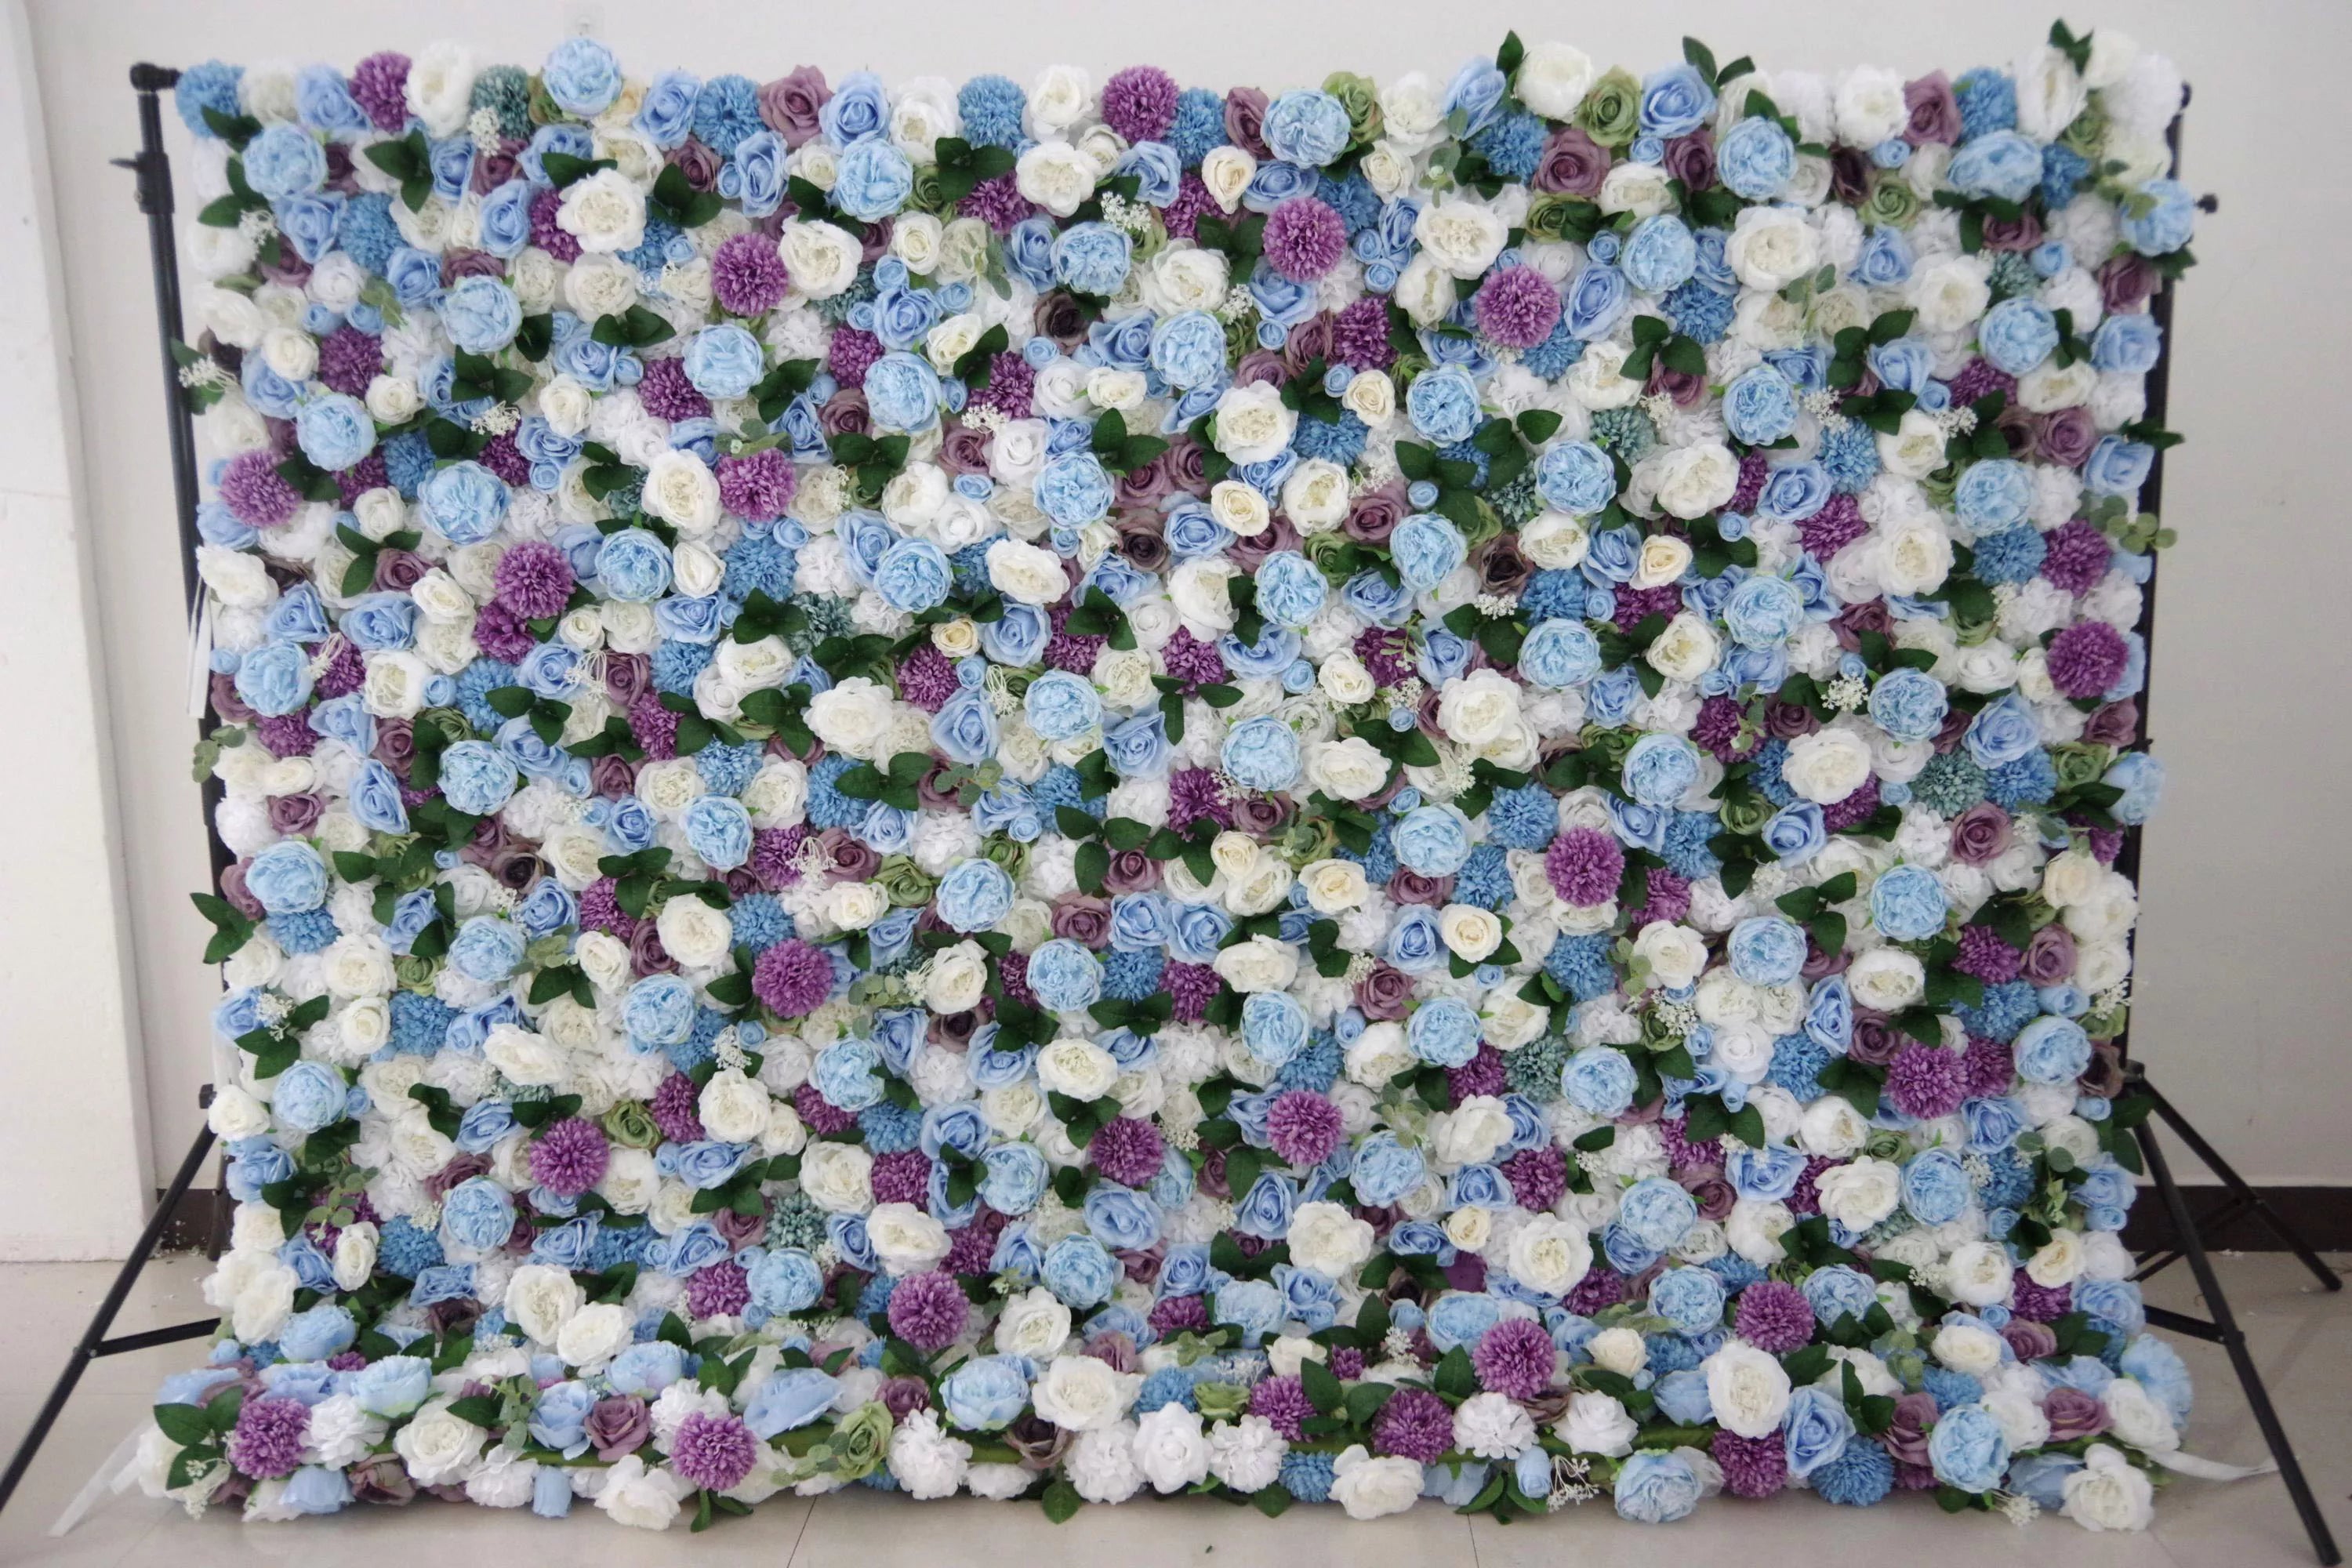 خلفية جدارية للزفاف من زهور فالار مزيجة صناعية بنفسجية بيضاء وزرقاء ، ديكور حفلات زهور ، حدث